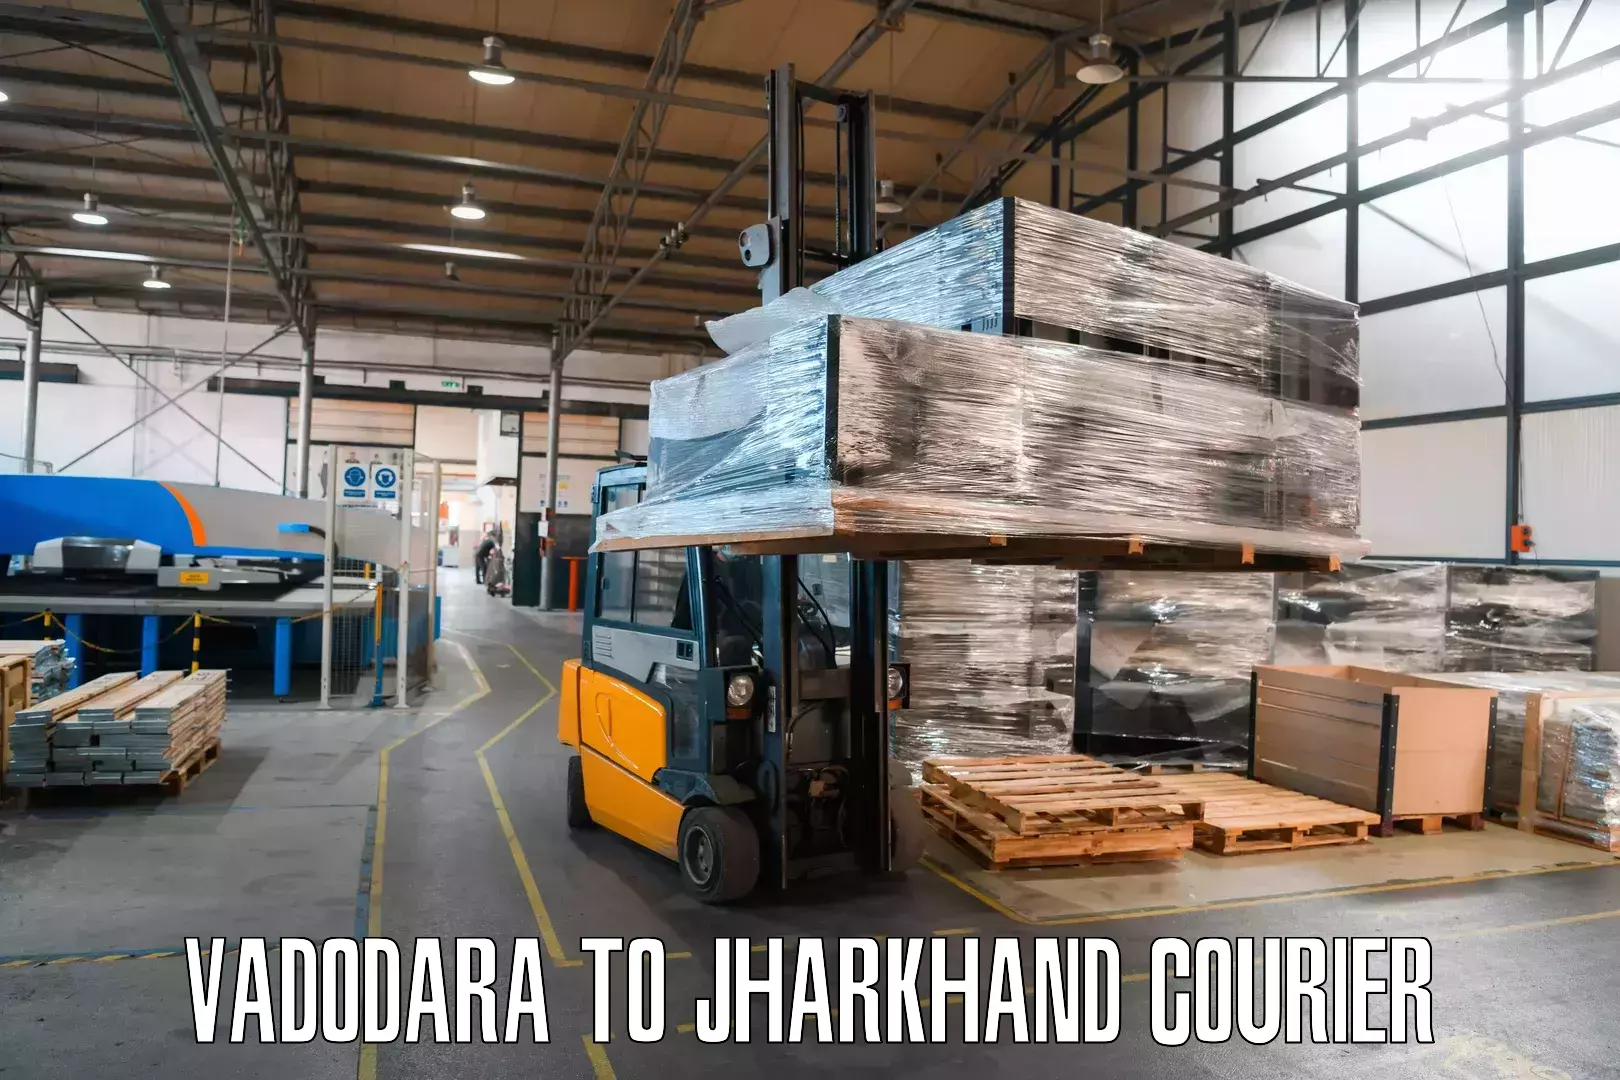 Cargo delivery service in Vadodara to Bara Boarijor